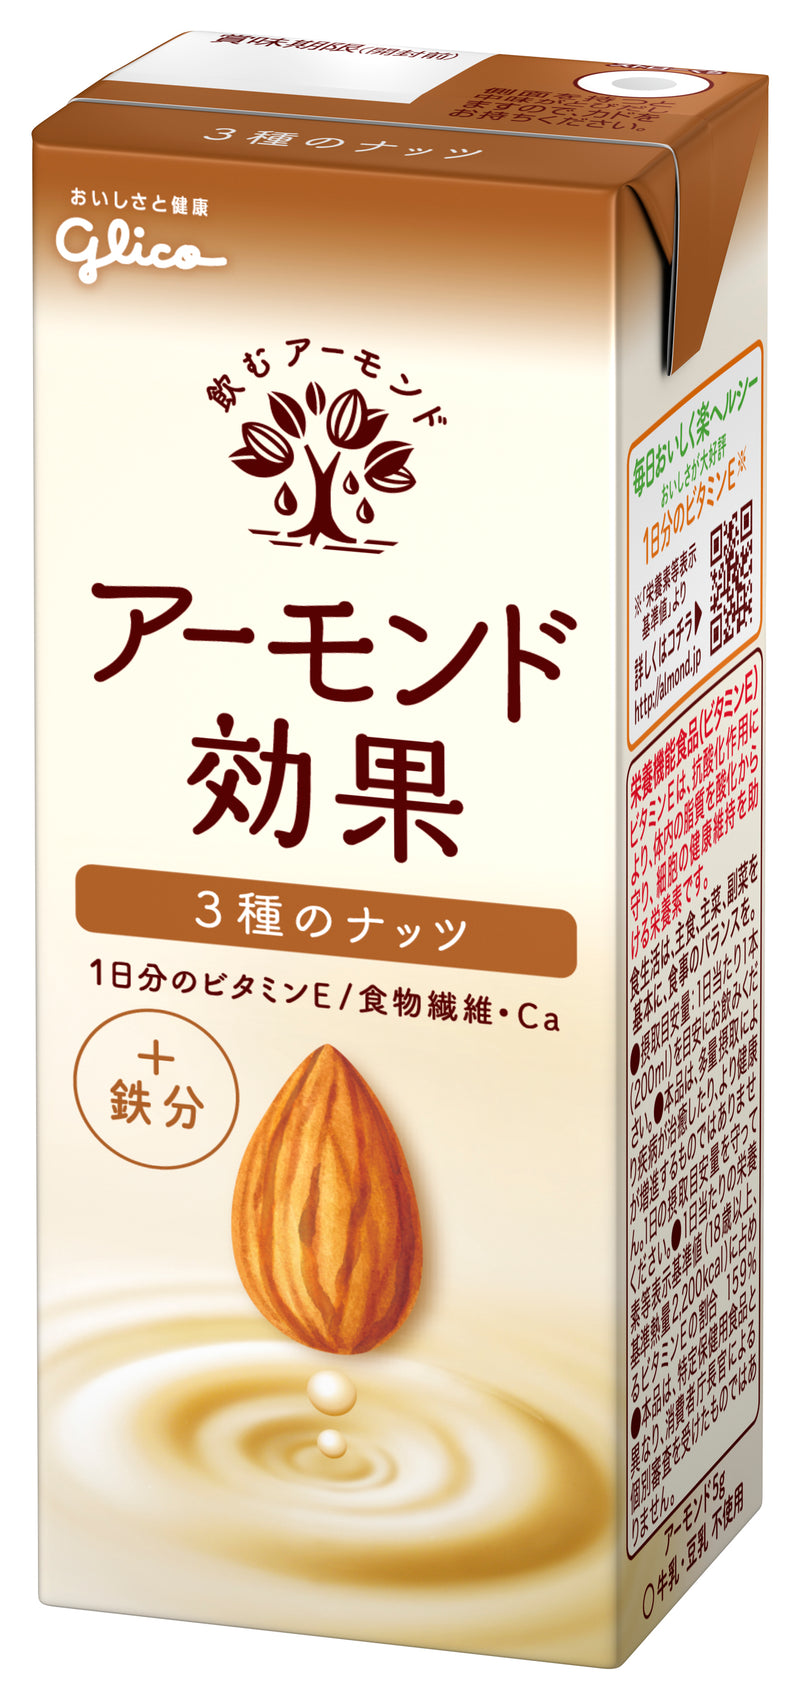 ◇江崎グリコ アーモンド効果 3種のナッツ 200ml - 水・ソフトドリンク